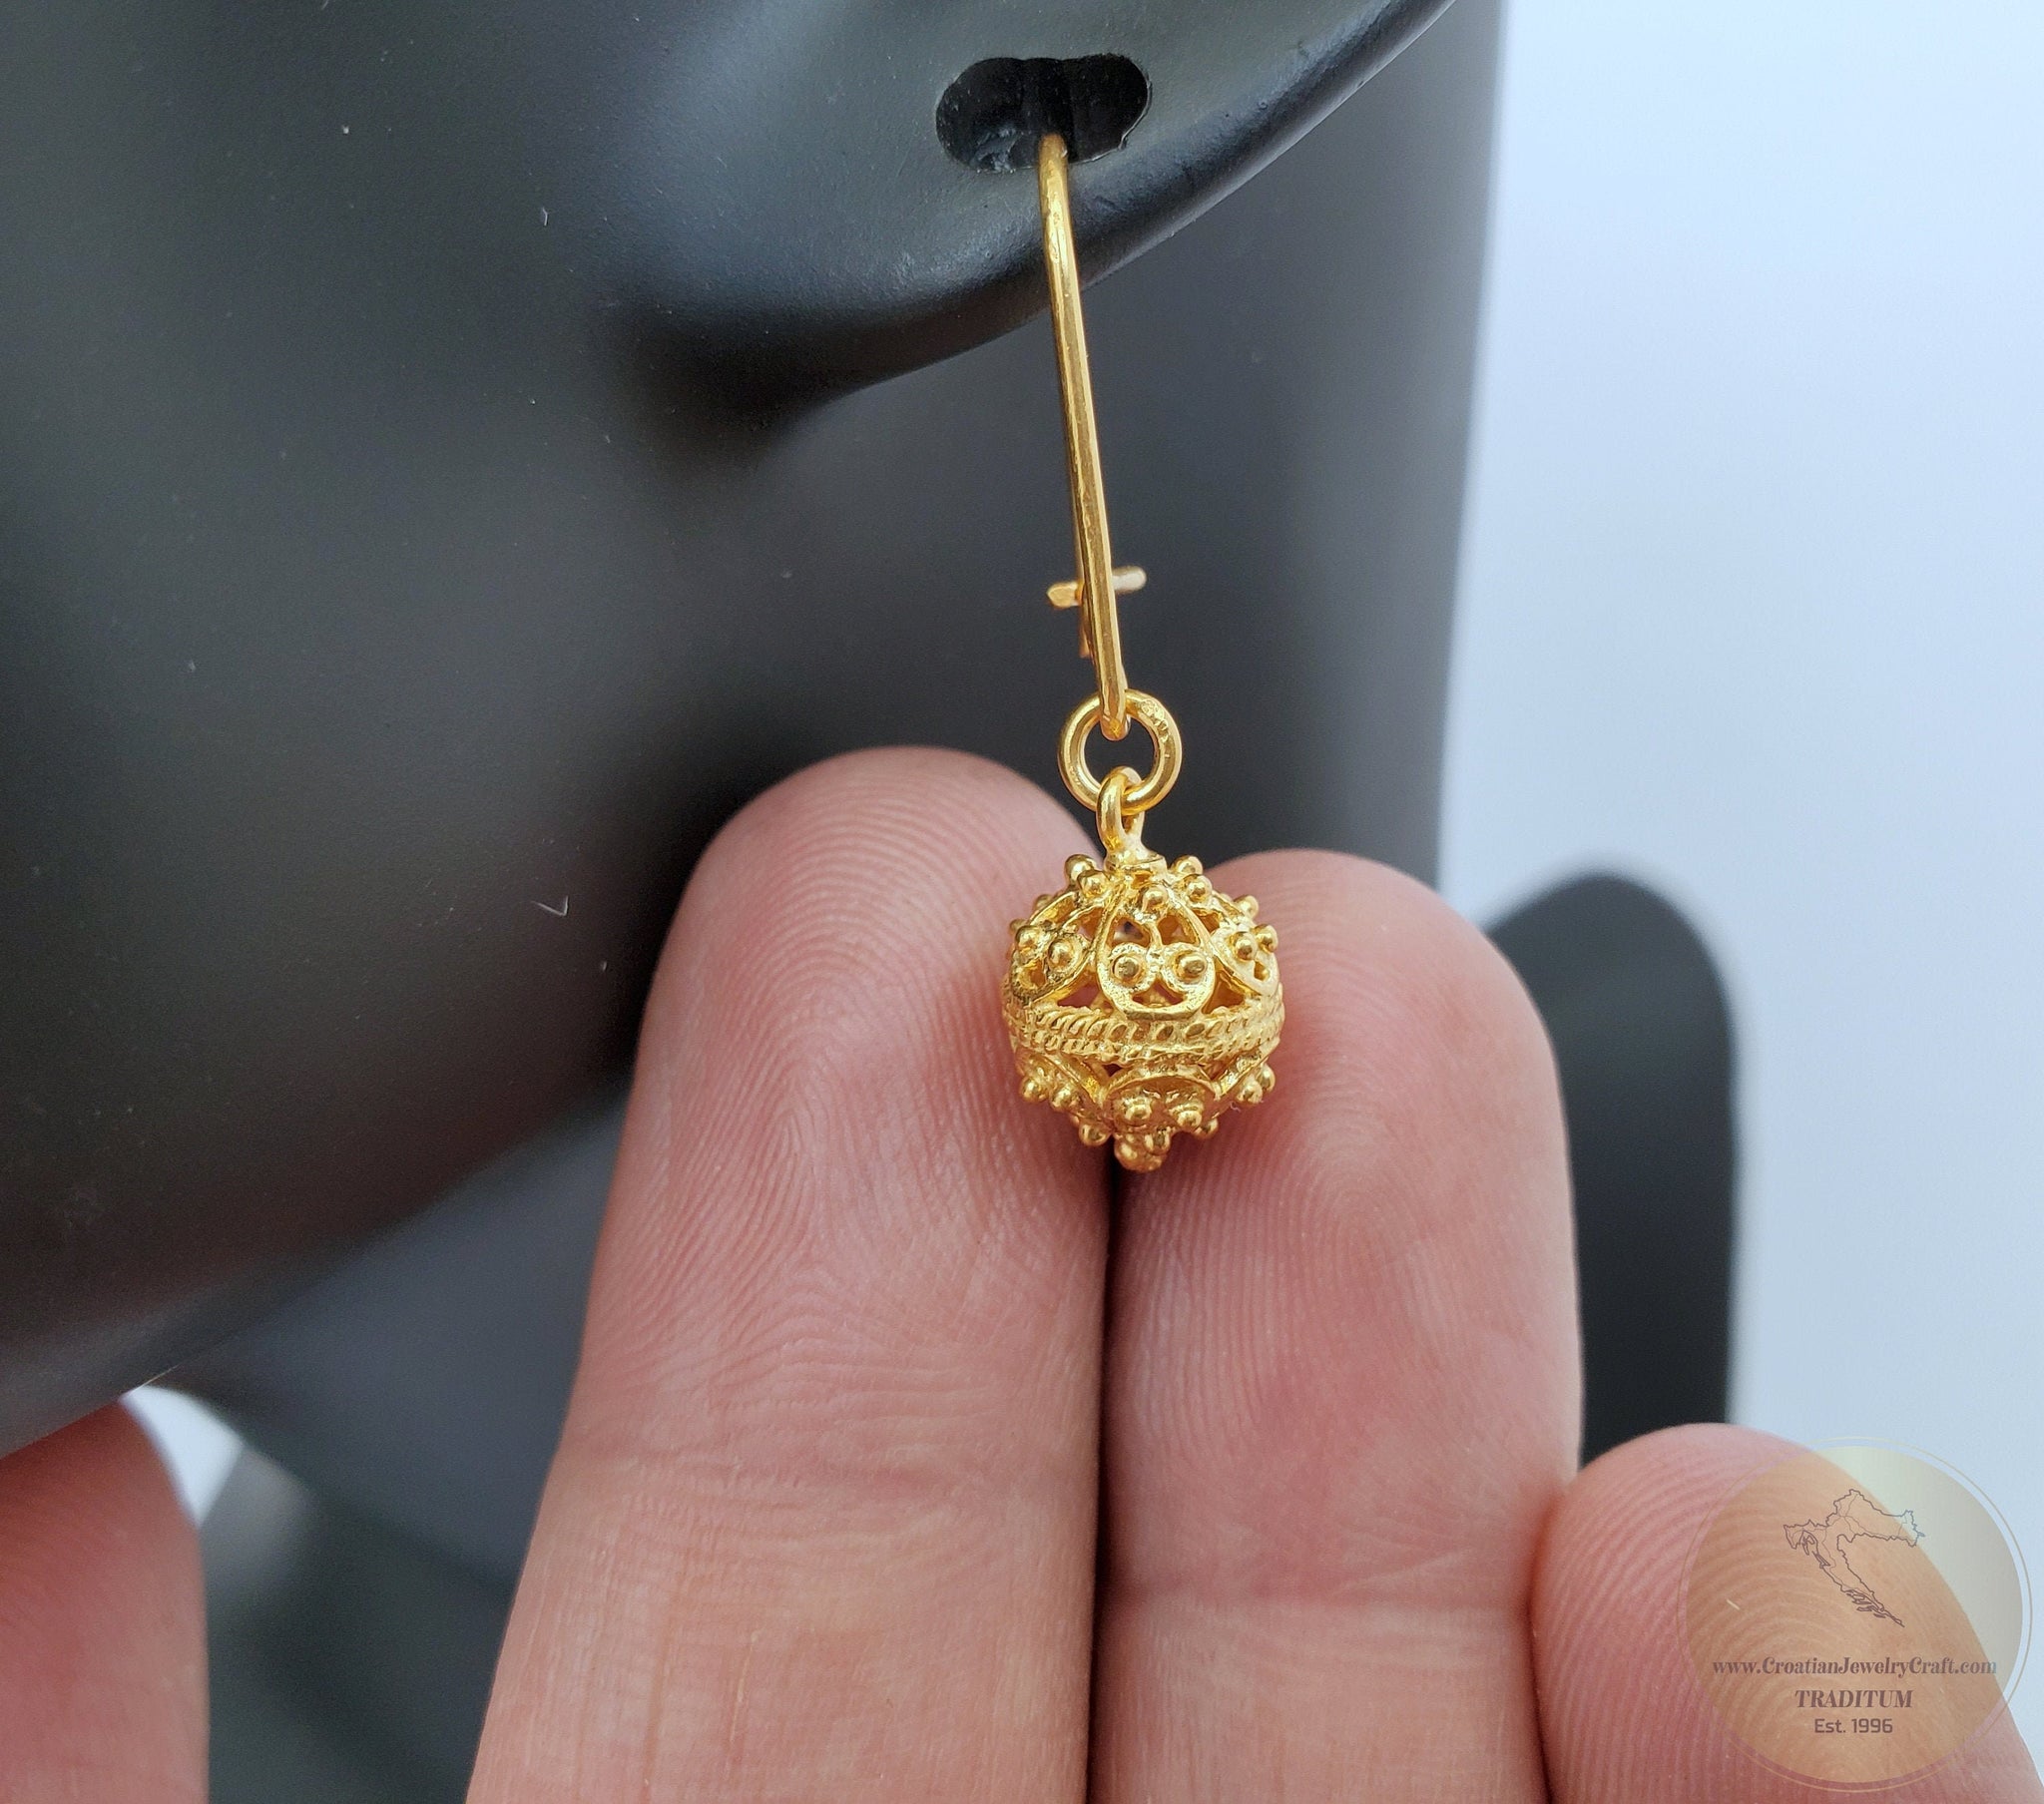 New Gold Small Earring Design | New Design Earrings Jewelry | New Fashion  Earrings - Hoop Earrings - Aliexpress